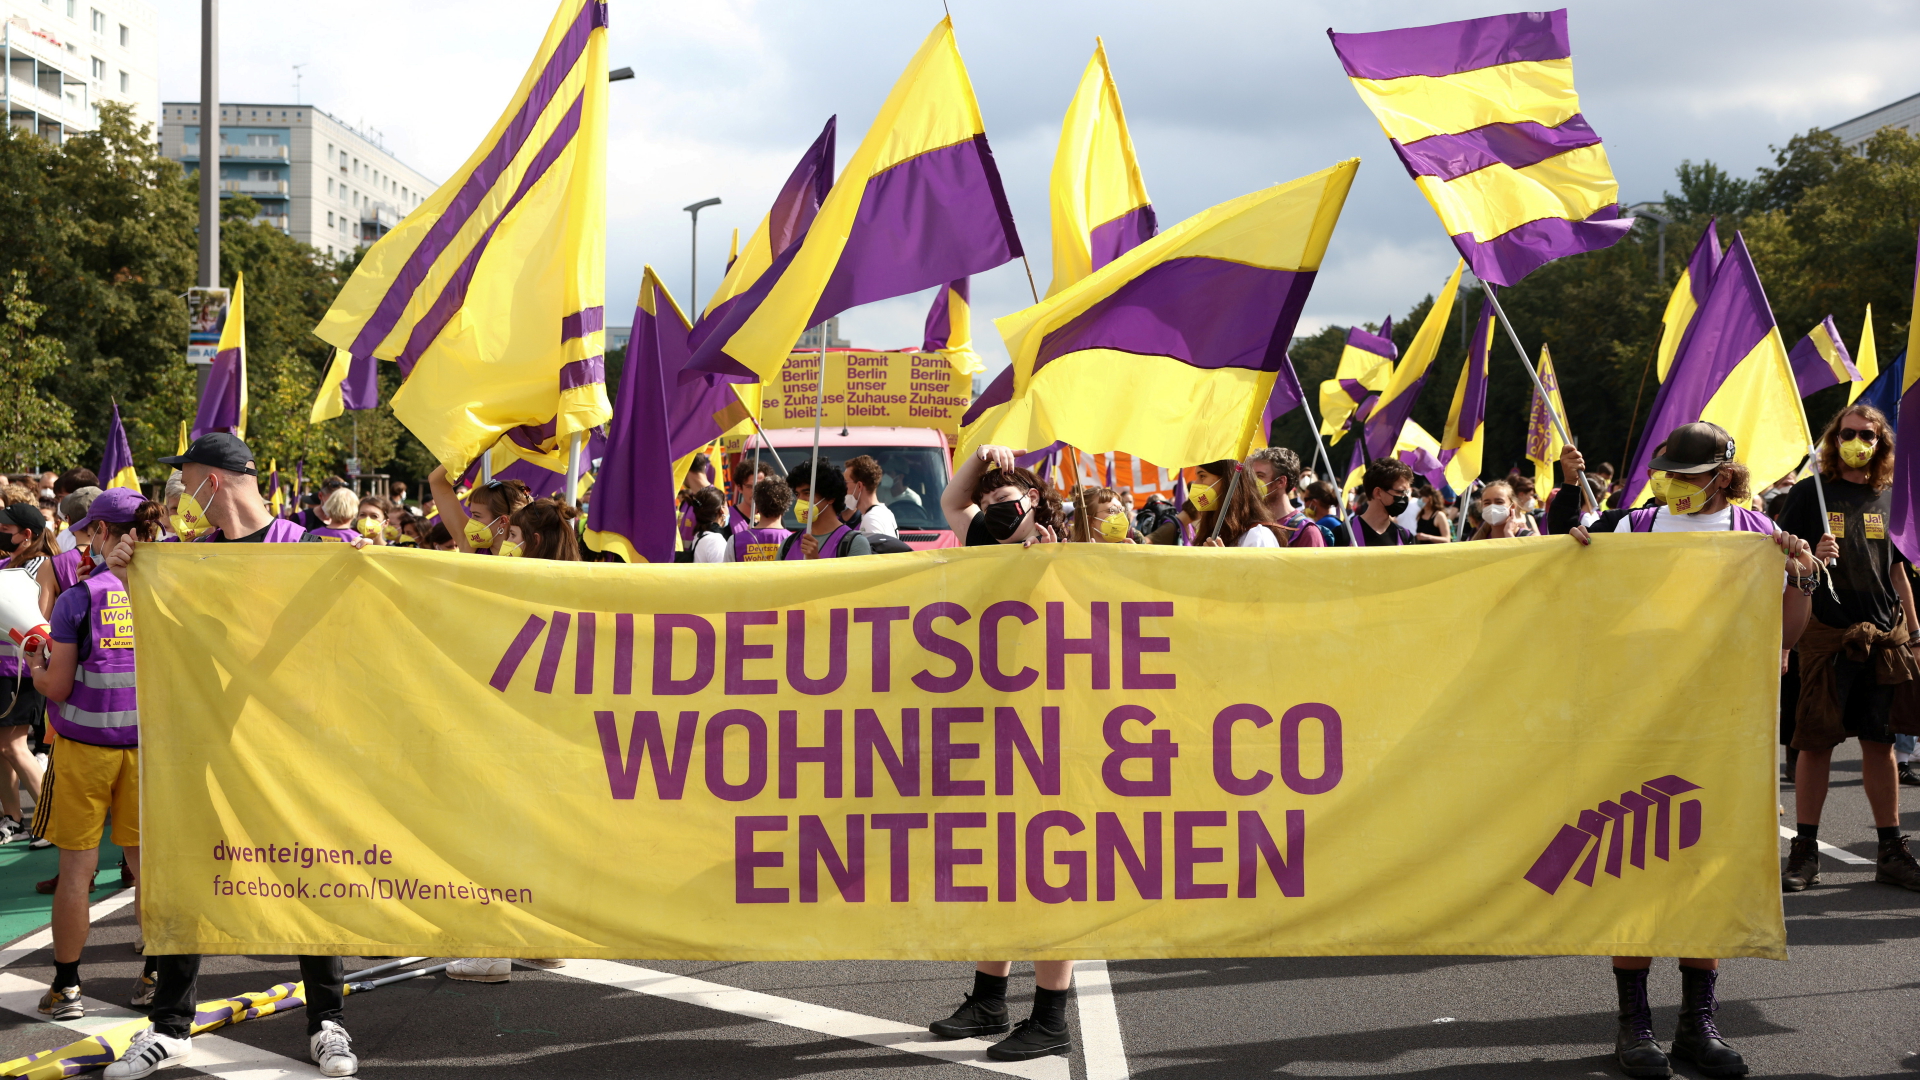 Anhänger der Initiative "Deutsche Wohnen & Co enteignen" demonstrieren | REUTERS